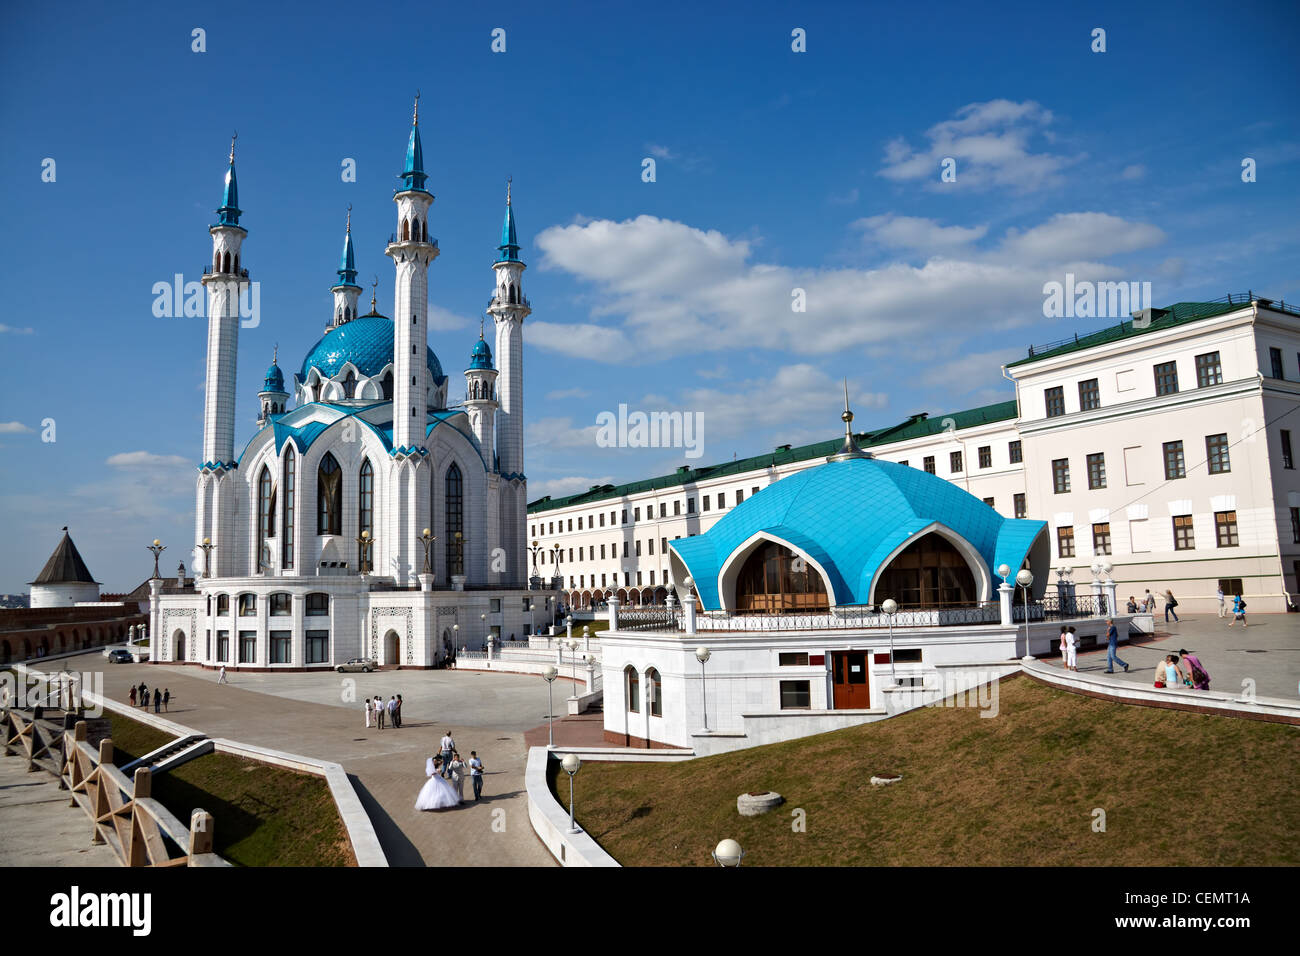 KASAN, Russland - 1. August 2009: Kul-Sharif ist touristische Attraktion von Kazan, Hauptstadt der Republik Tatarstan und der Universiade 2013 Stockfoto